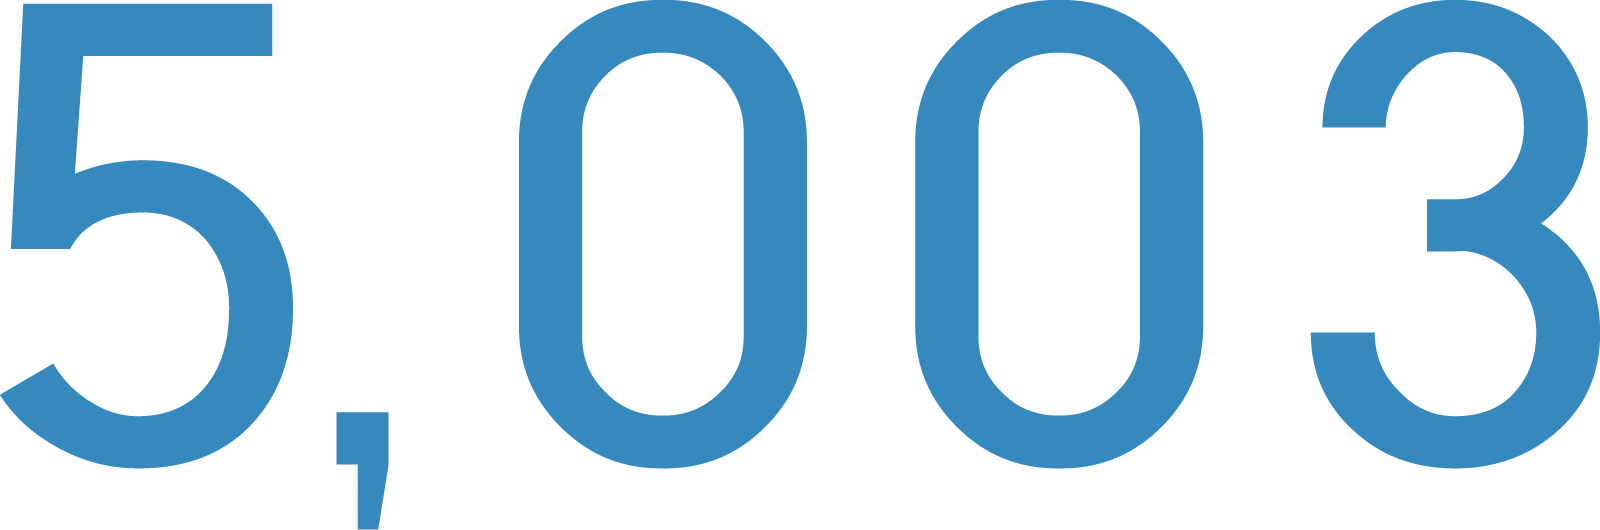 5,003